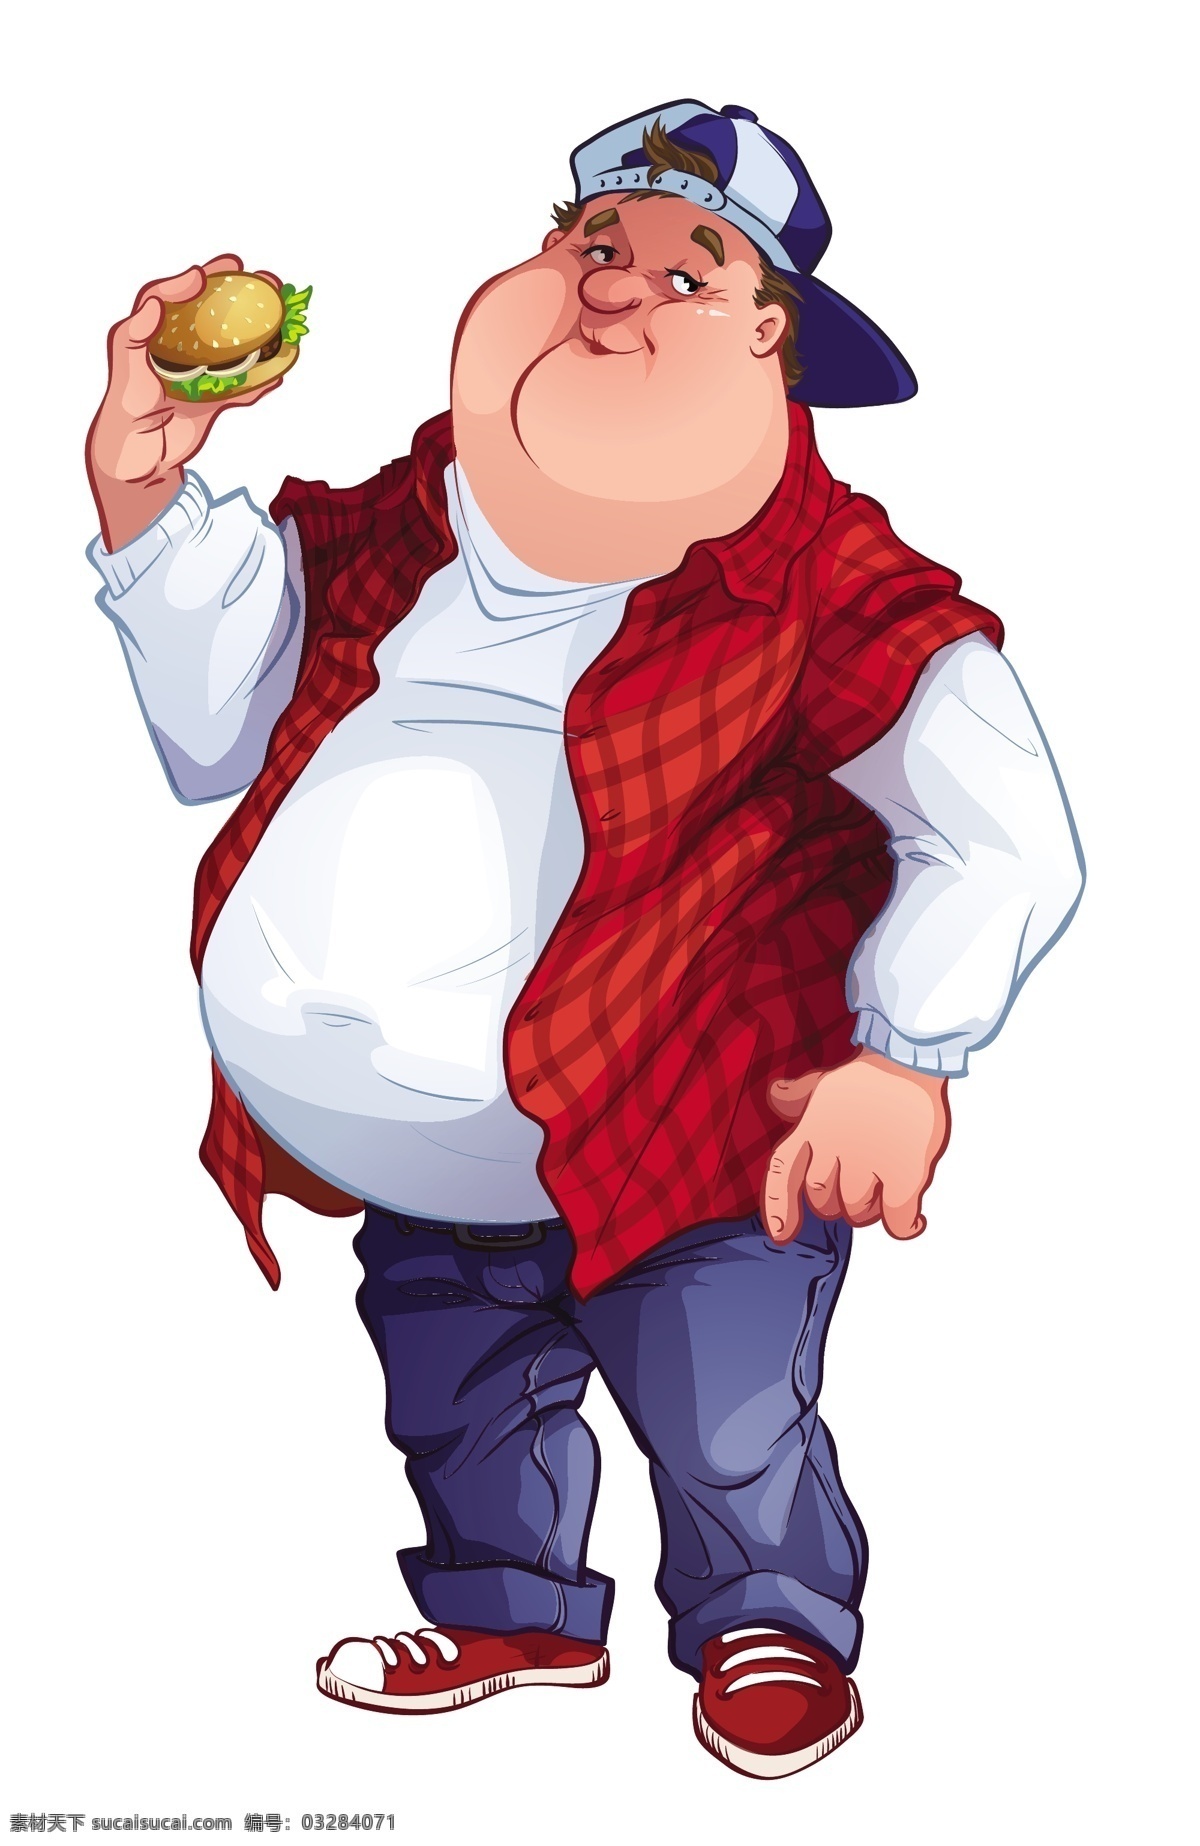 汉堡包 胖子 插画 卡通画 人物 胖子插画 男人 日常生活 矢量人物 矢量素材